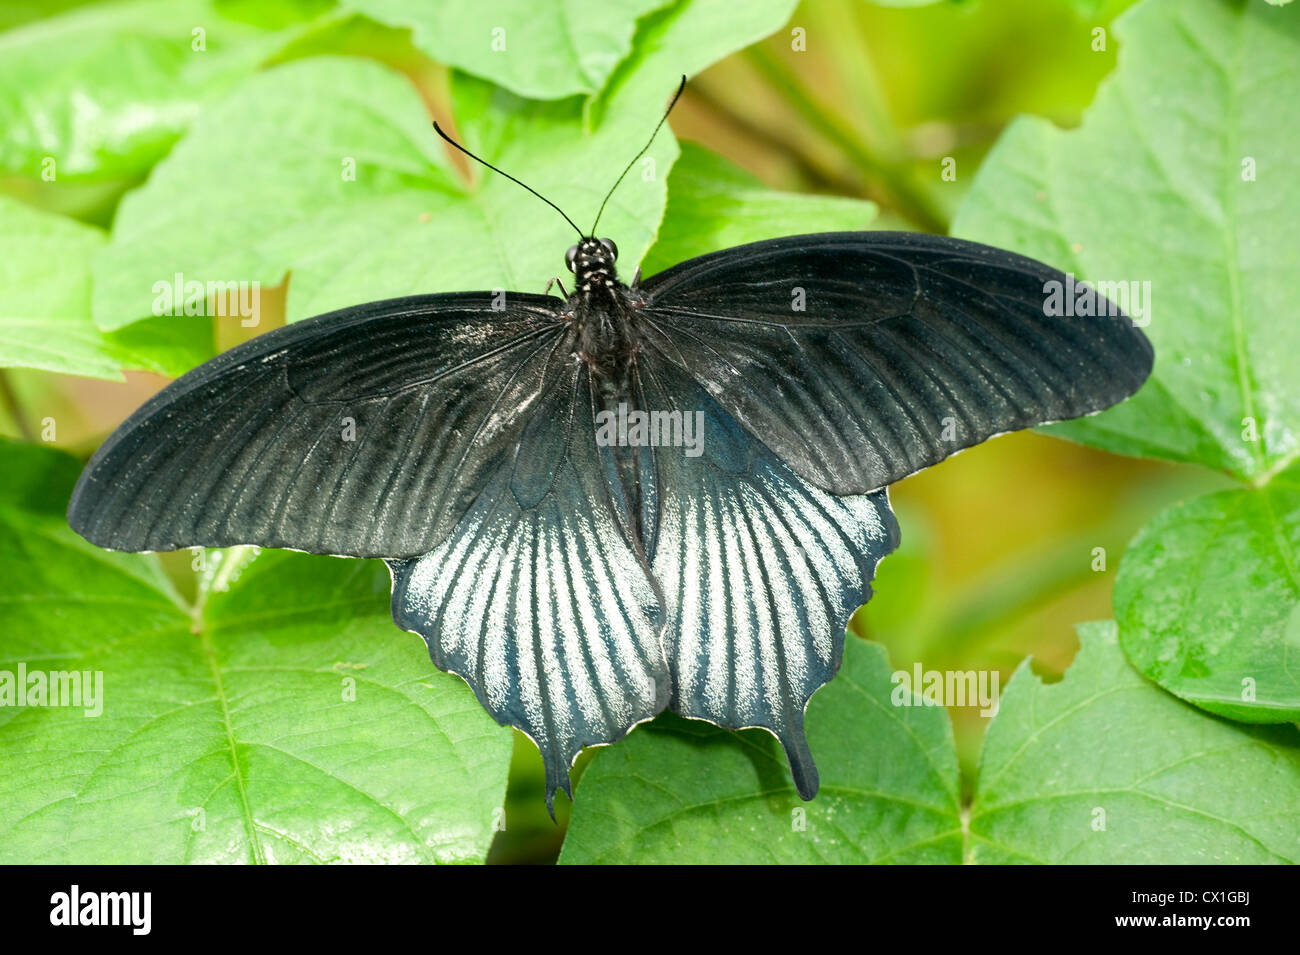 Scarlet coda forcuta Papilio rumanzovia Asia del Sud i colori blu e nero giungla foresta pluviale Foto Stock